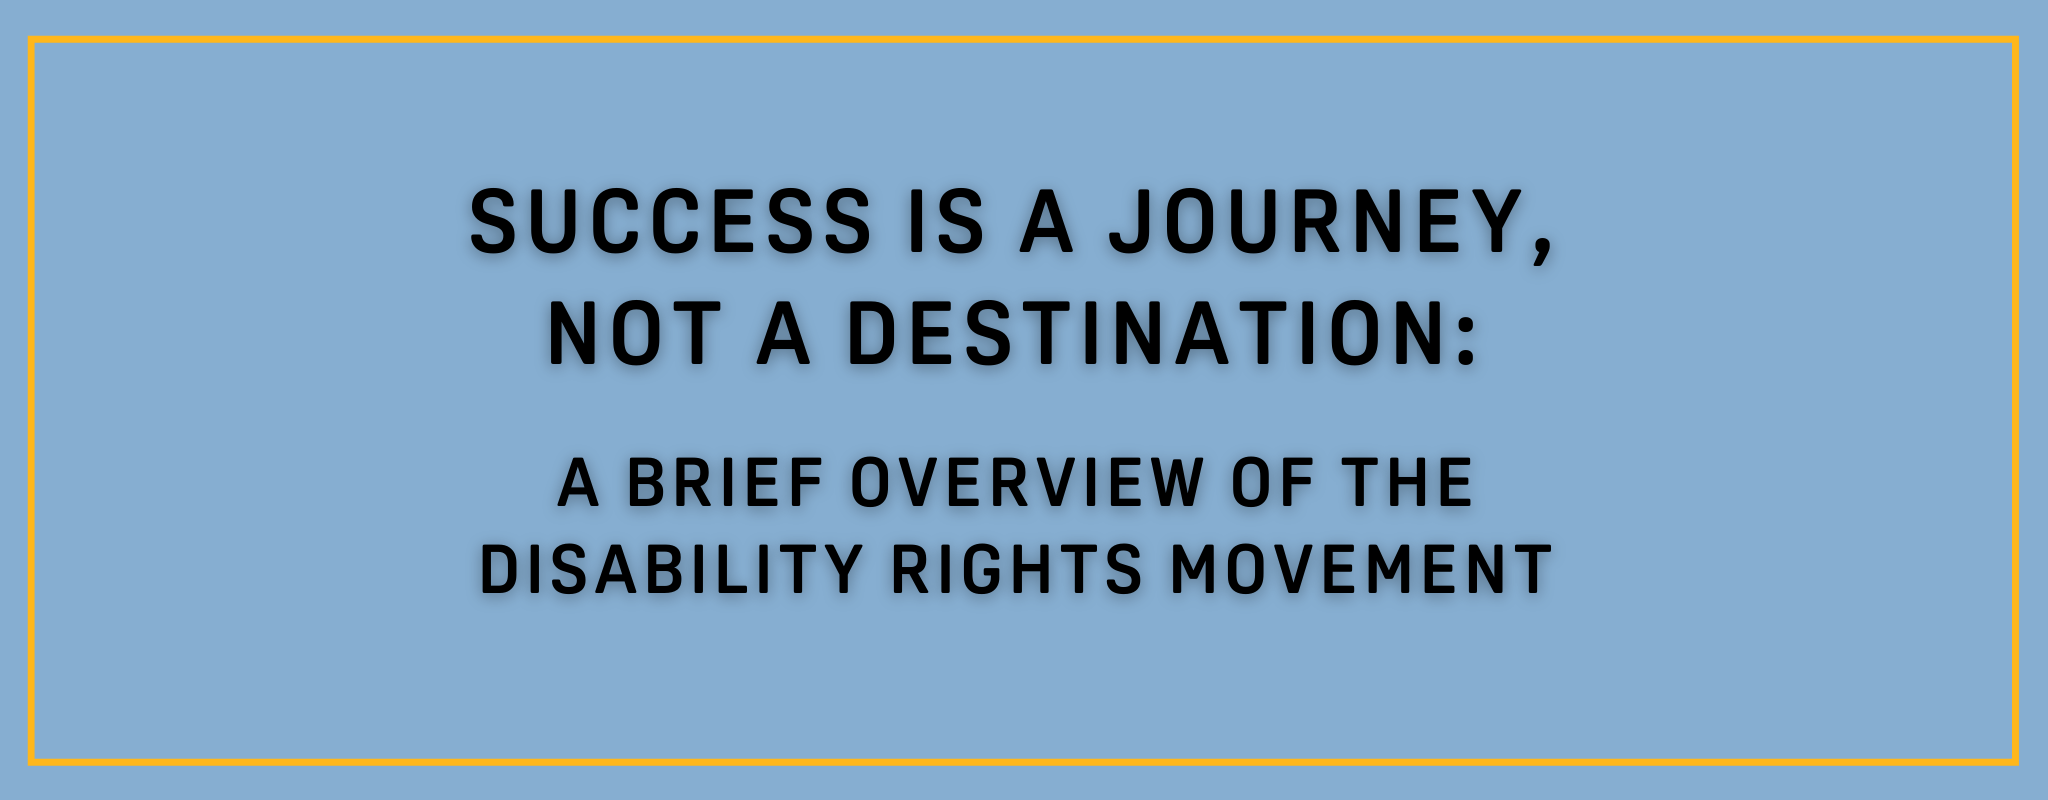 Bannière bleu clair avec le texte qui dit "Le succès est un voyage, pas une destination : un bref aperçu du mouvement pour les droits des personnes handicapées"